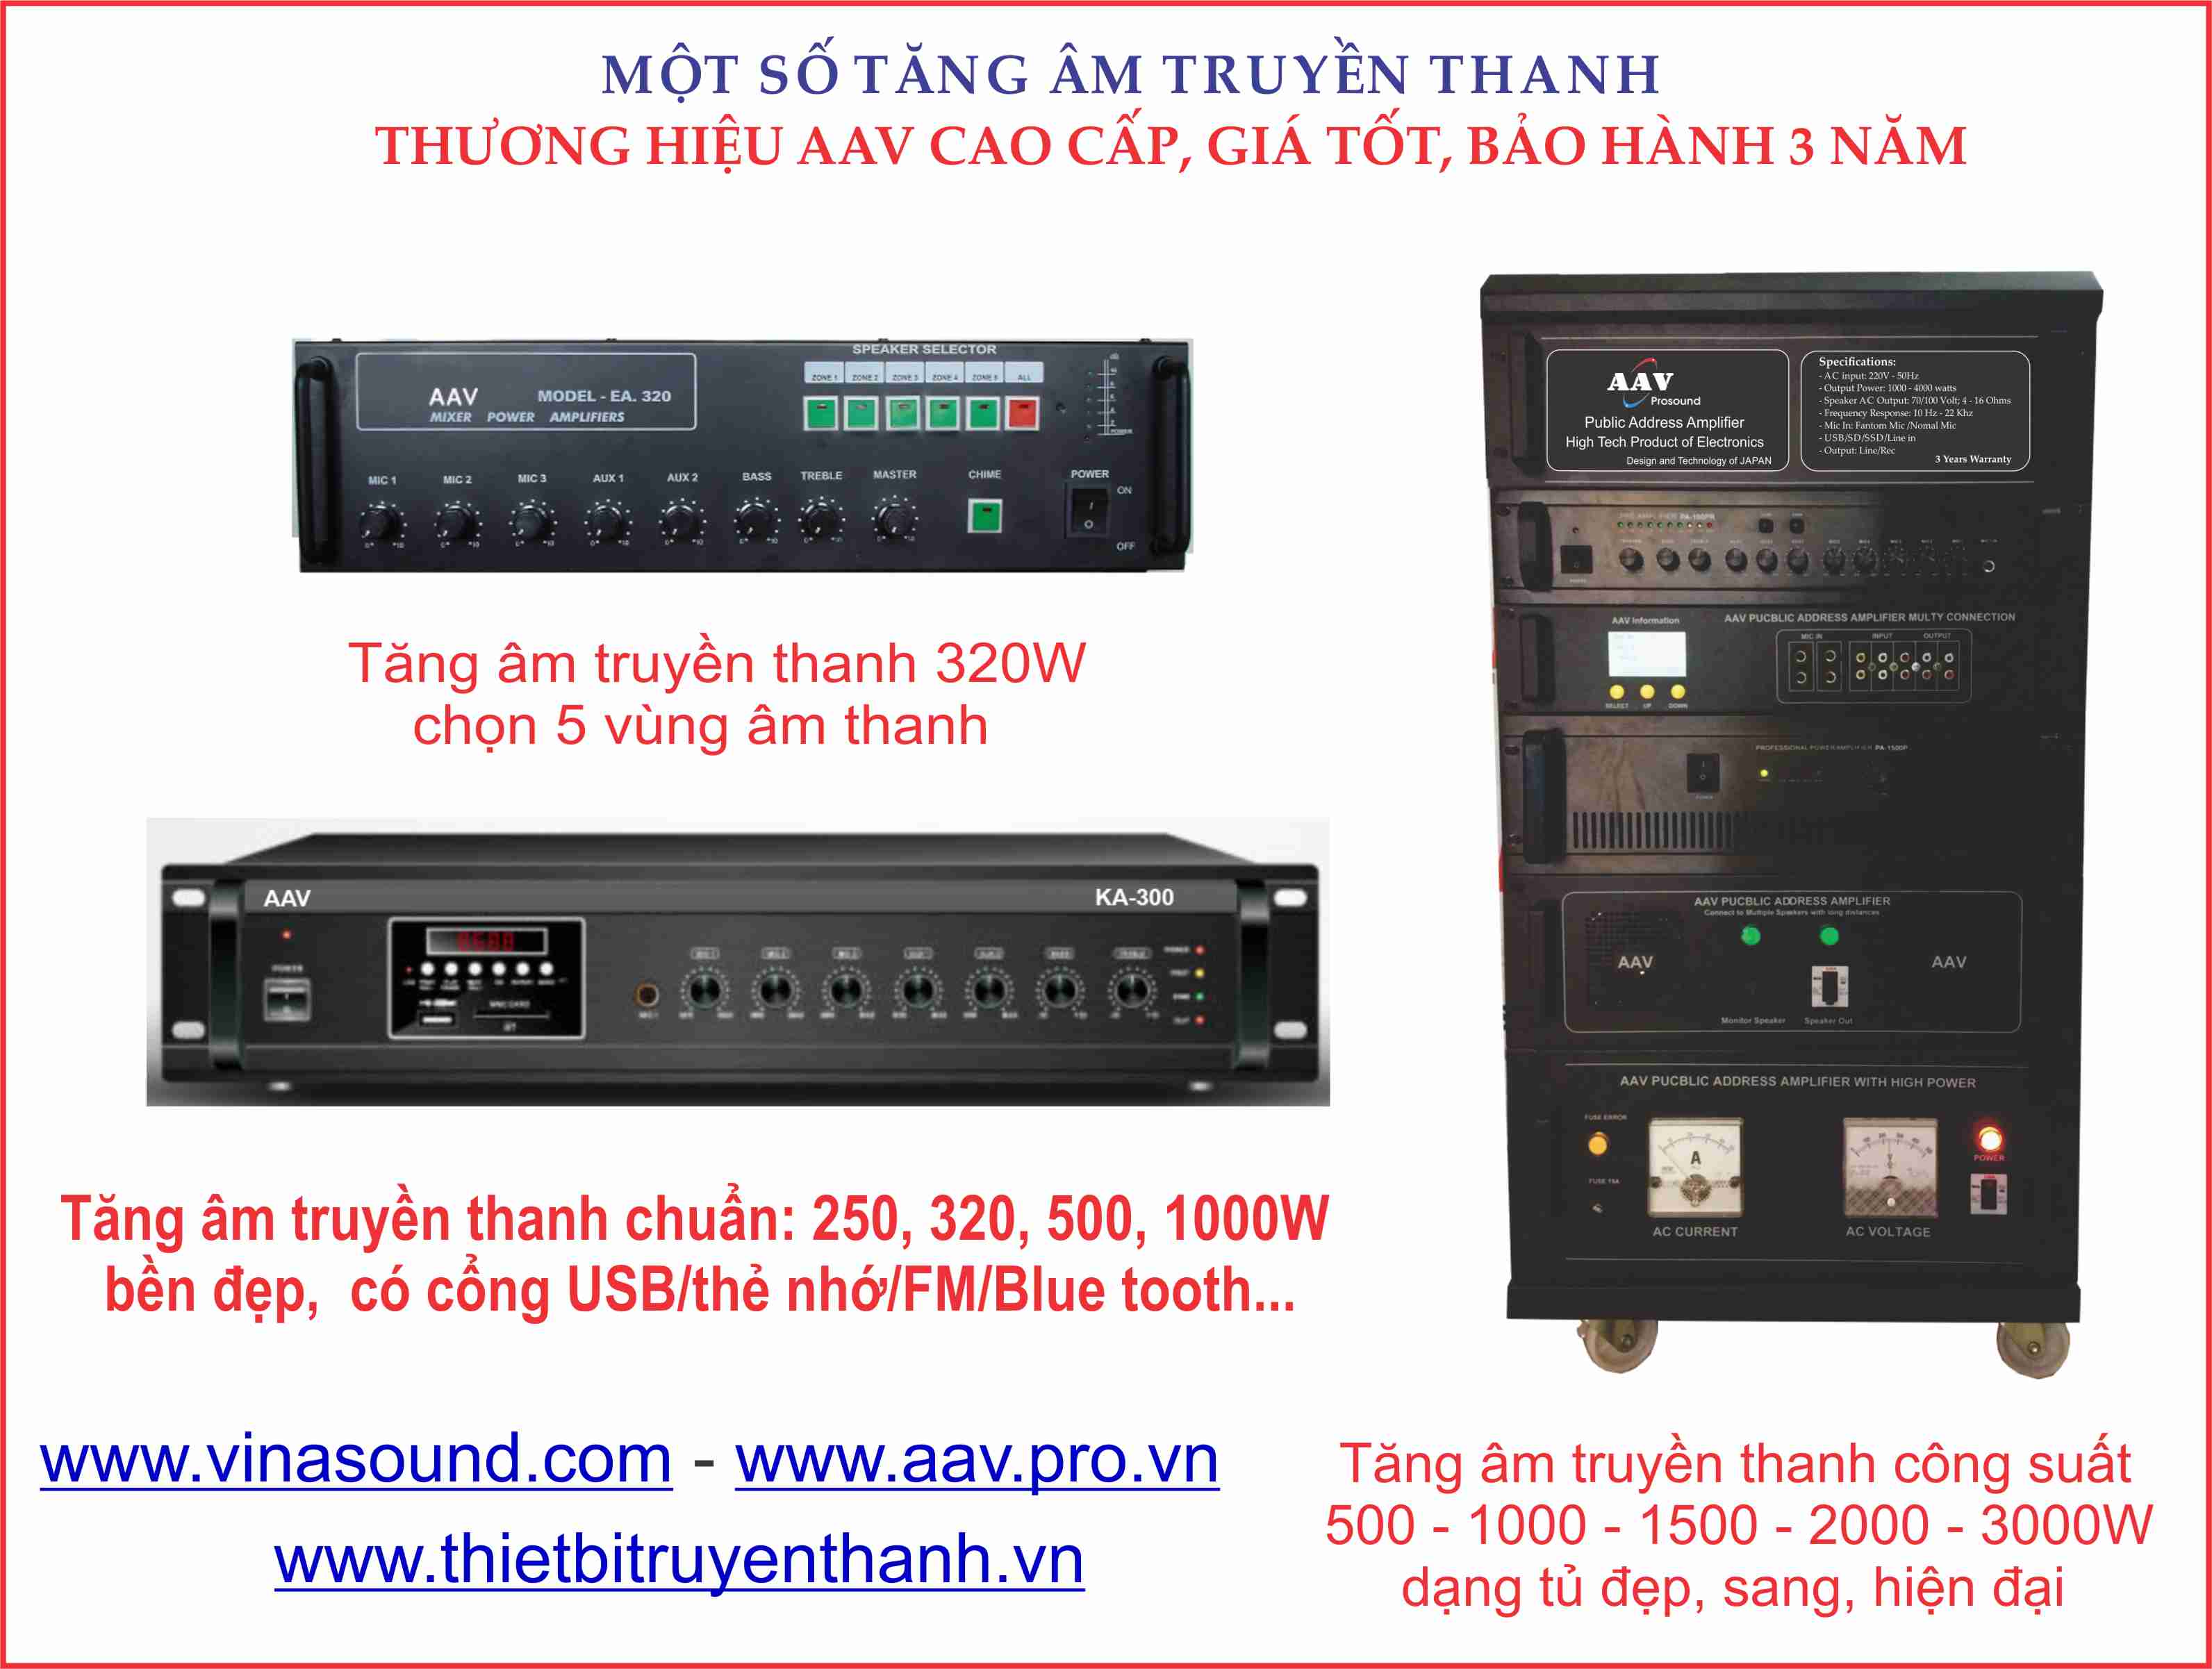 Tăng âm truyền thanh AAV 500W, 1000W, 1500W, 2000W, 3000W, 4000W chuẩn, giá tốt, bảo hành 3 năm